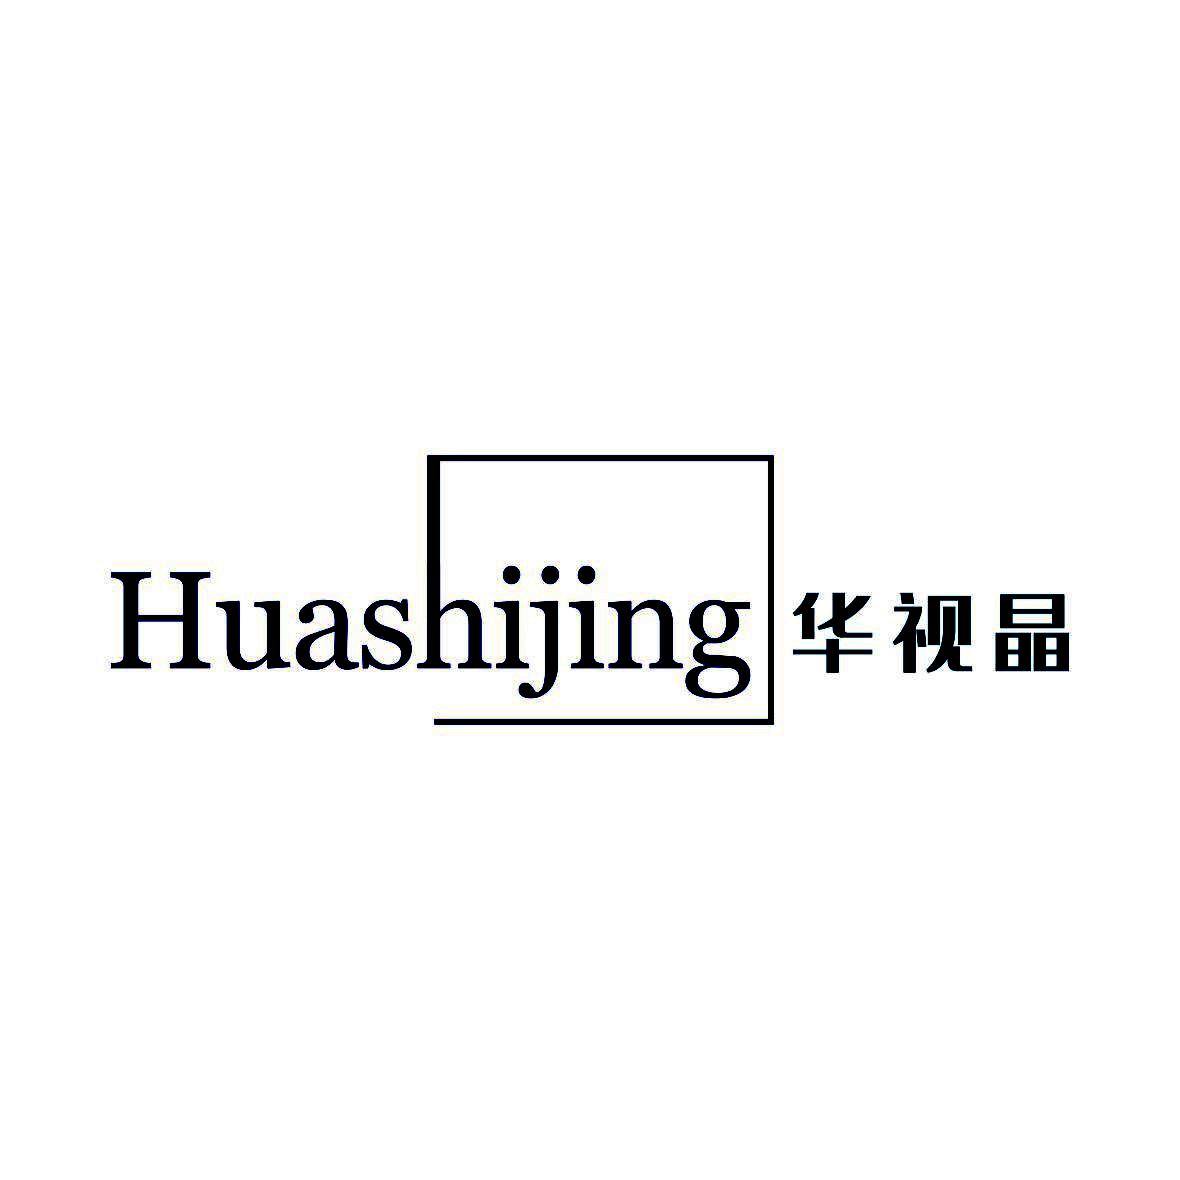 华视晶HuashijingD眼镜商标转让费用买卖交易流程